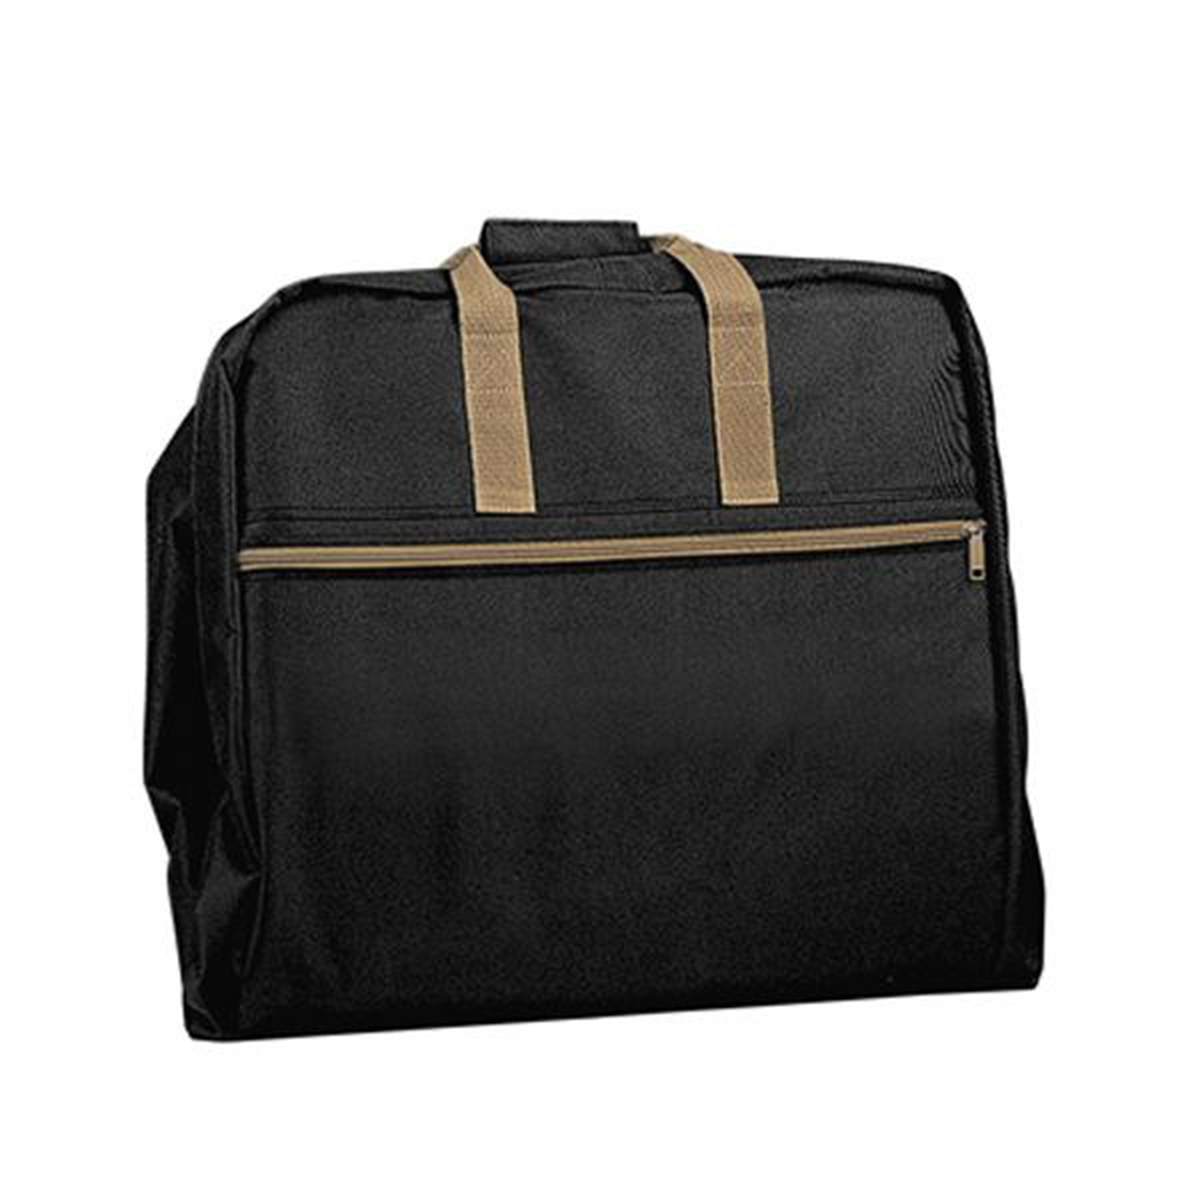 Black/Khaki Garment Bag